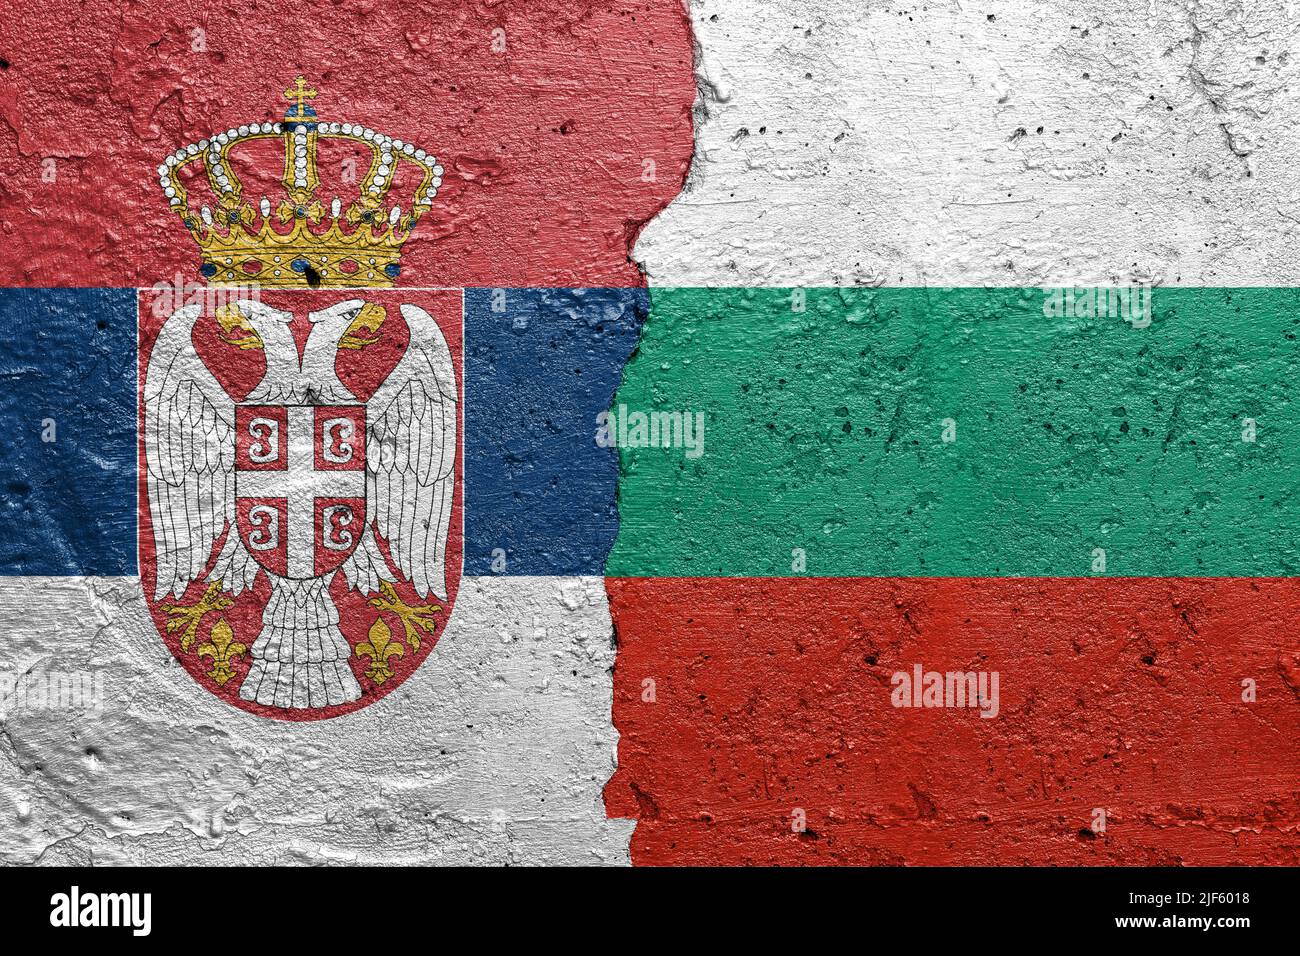 Drapeaux de Serbie et de Bulgarie - mur en béton fissuré peint avec un drapeau serbe à gauche et un drapeau bulgare à droite Banque D'Images